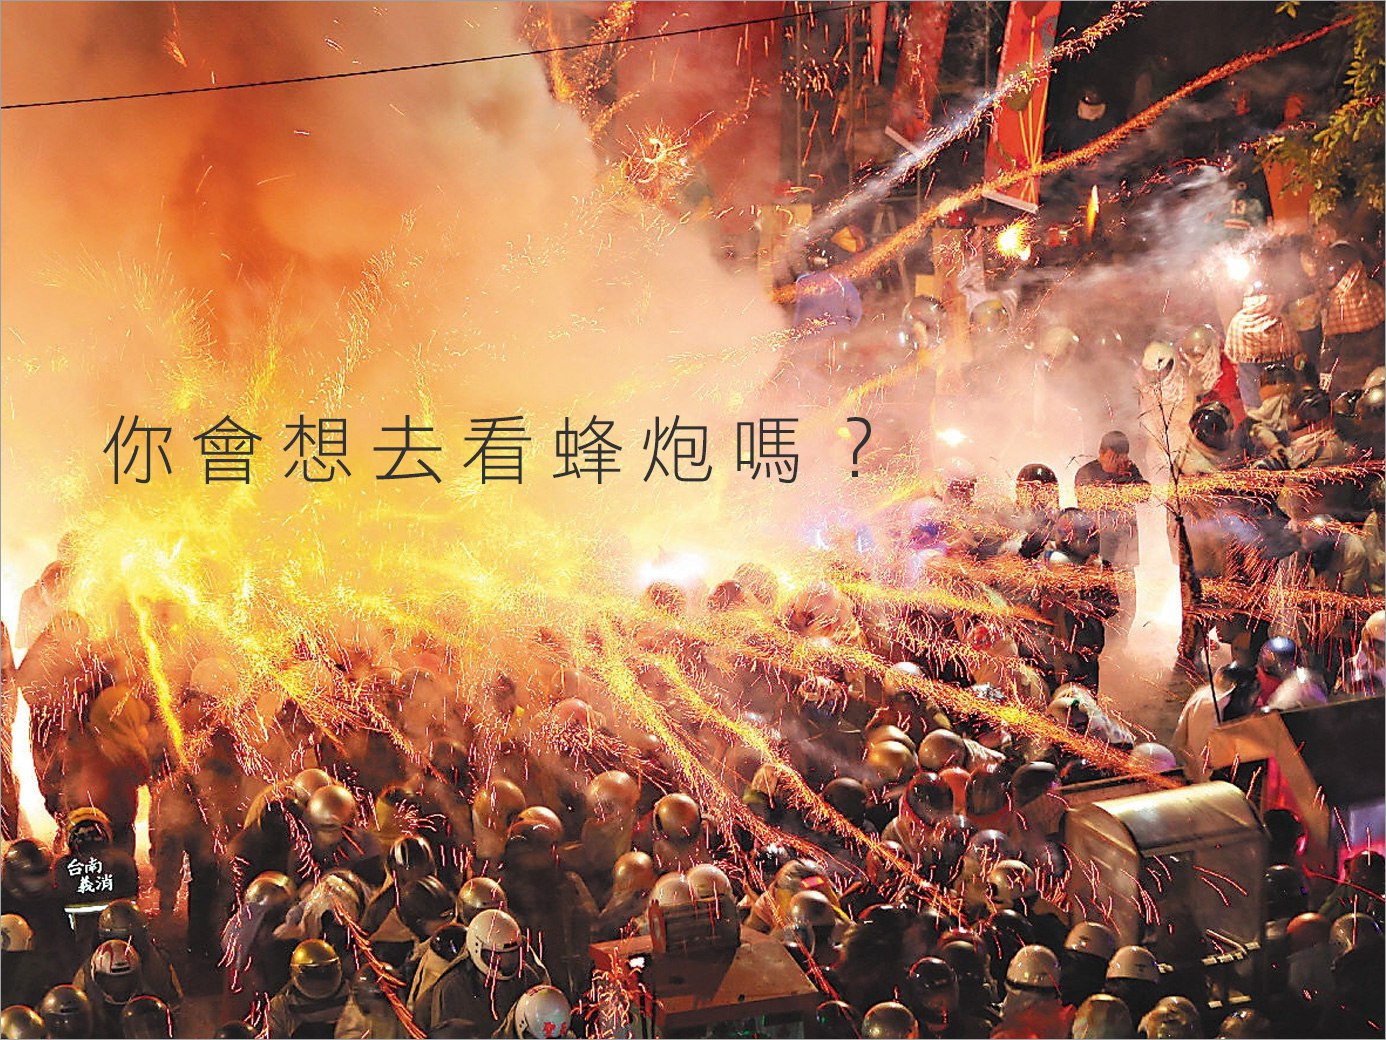 台南鹽水每年最重要的慶典「蜂炮」，你是否想要去體驗萬炮齊發的威力呢？